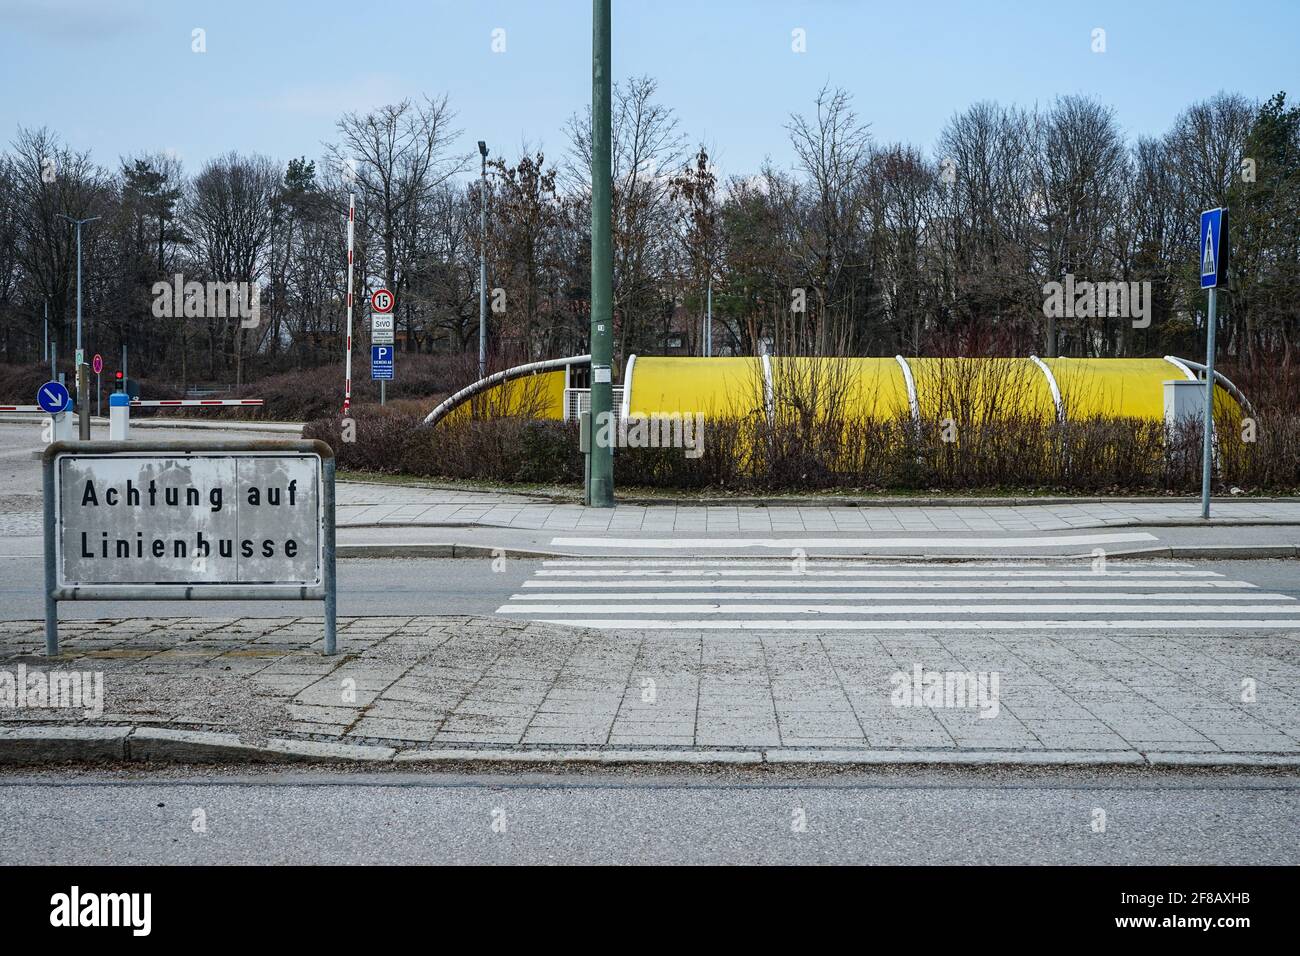 München, Neuperlach-Süd, Bayern, Deutschland, März 7, 2021:  Siemens-Standort München Perlach (Legoland genannt). Blick vom Otto-Hahn- Ring. Fahrradständer Stockfotografie - Alamy